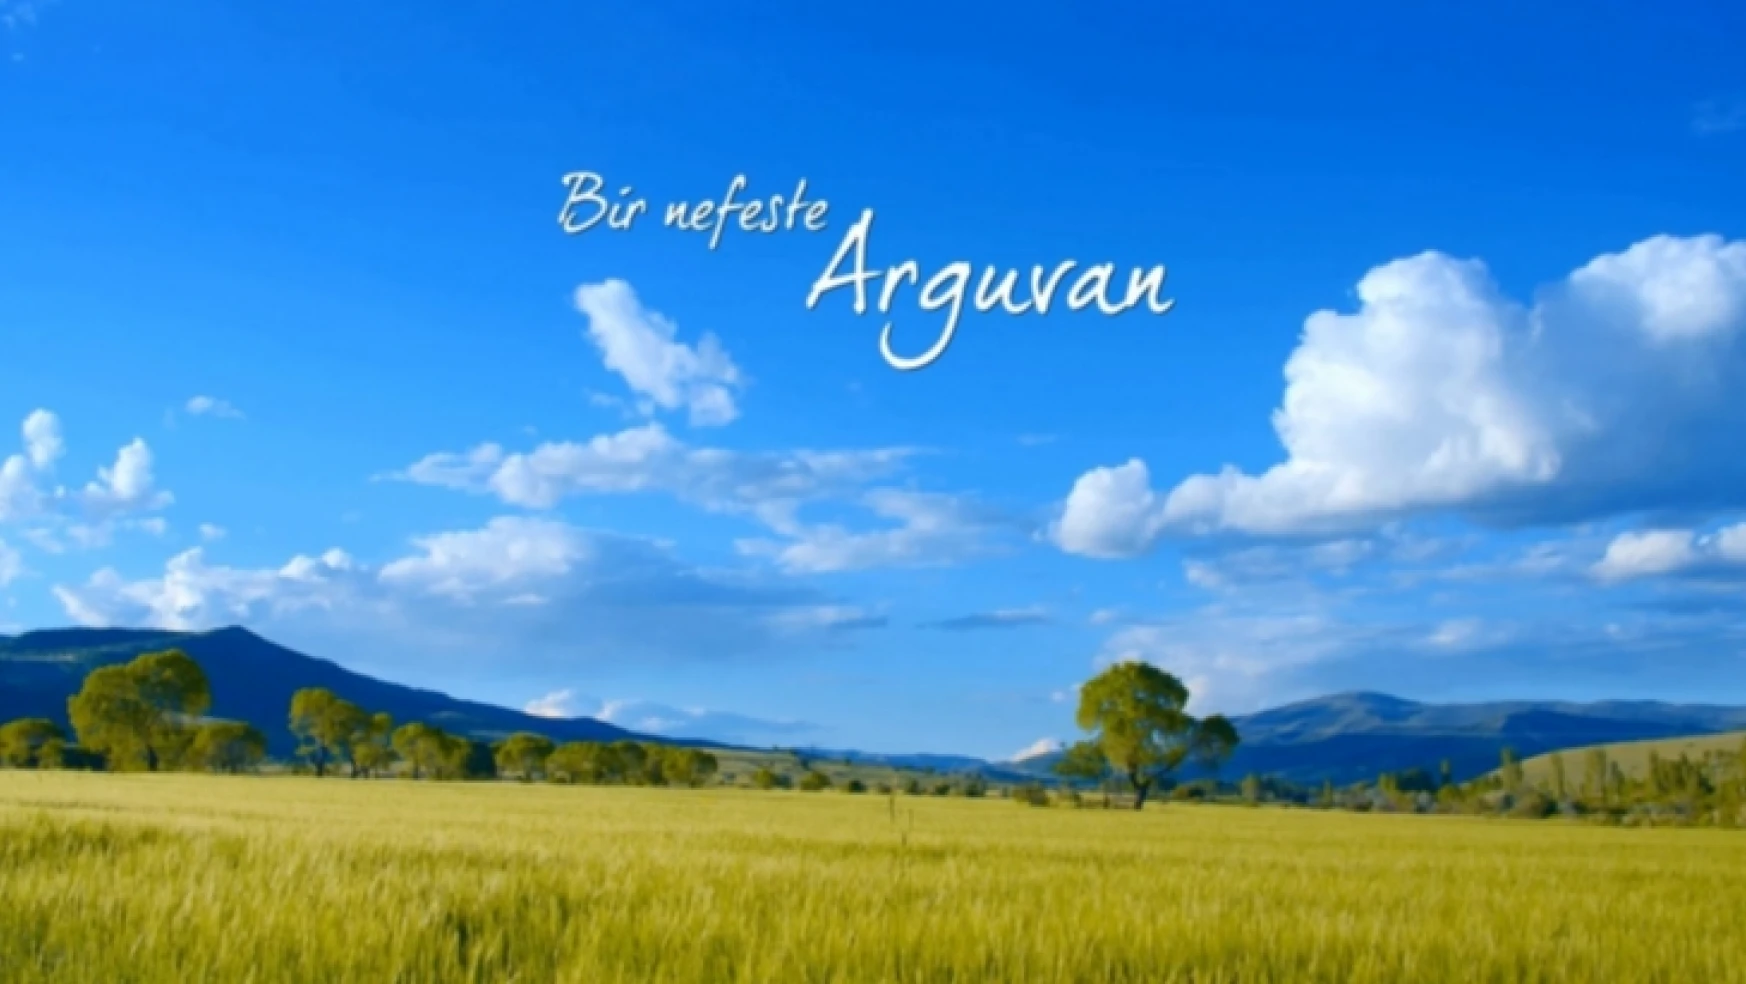 Bir Nefeste Arguvan klibi tanıtıldı